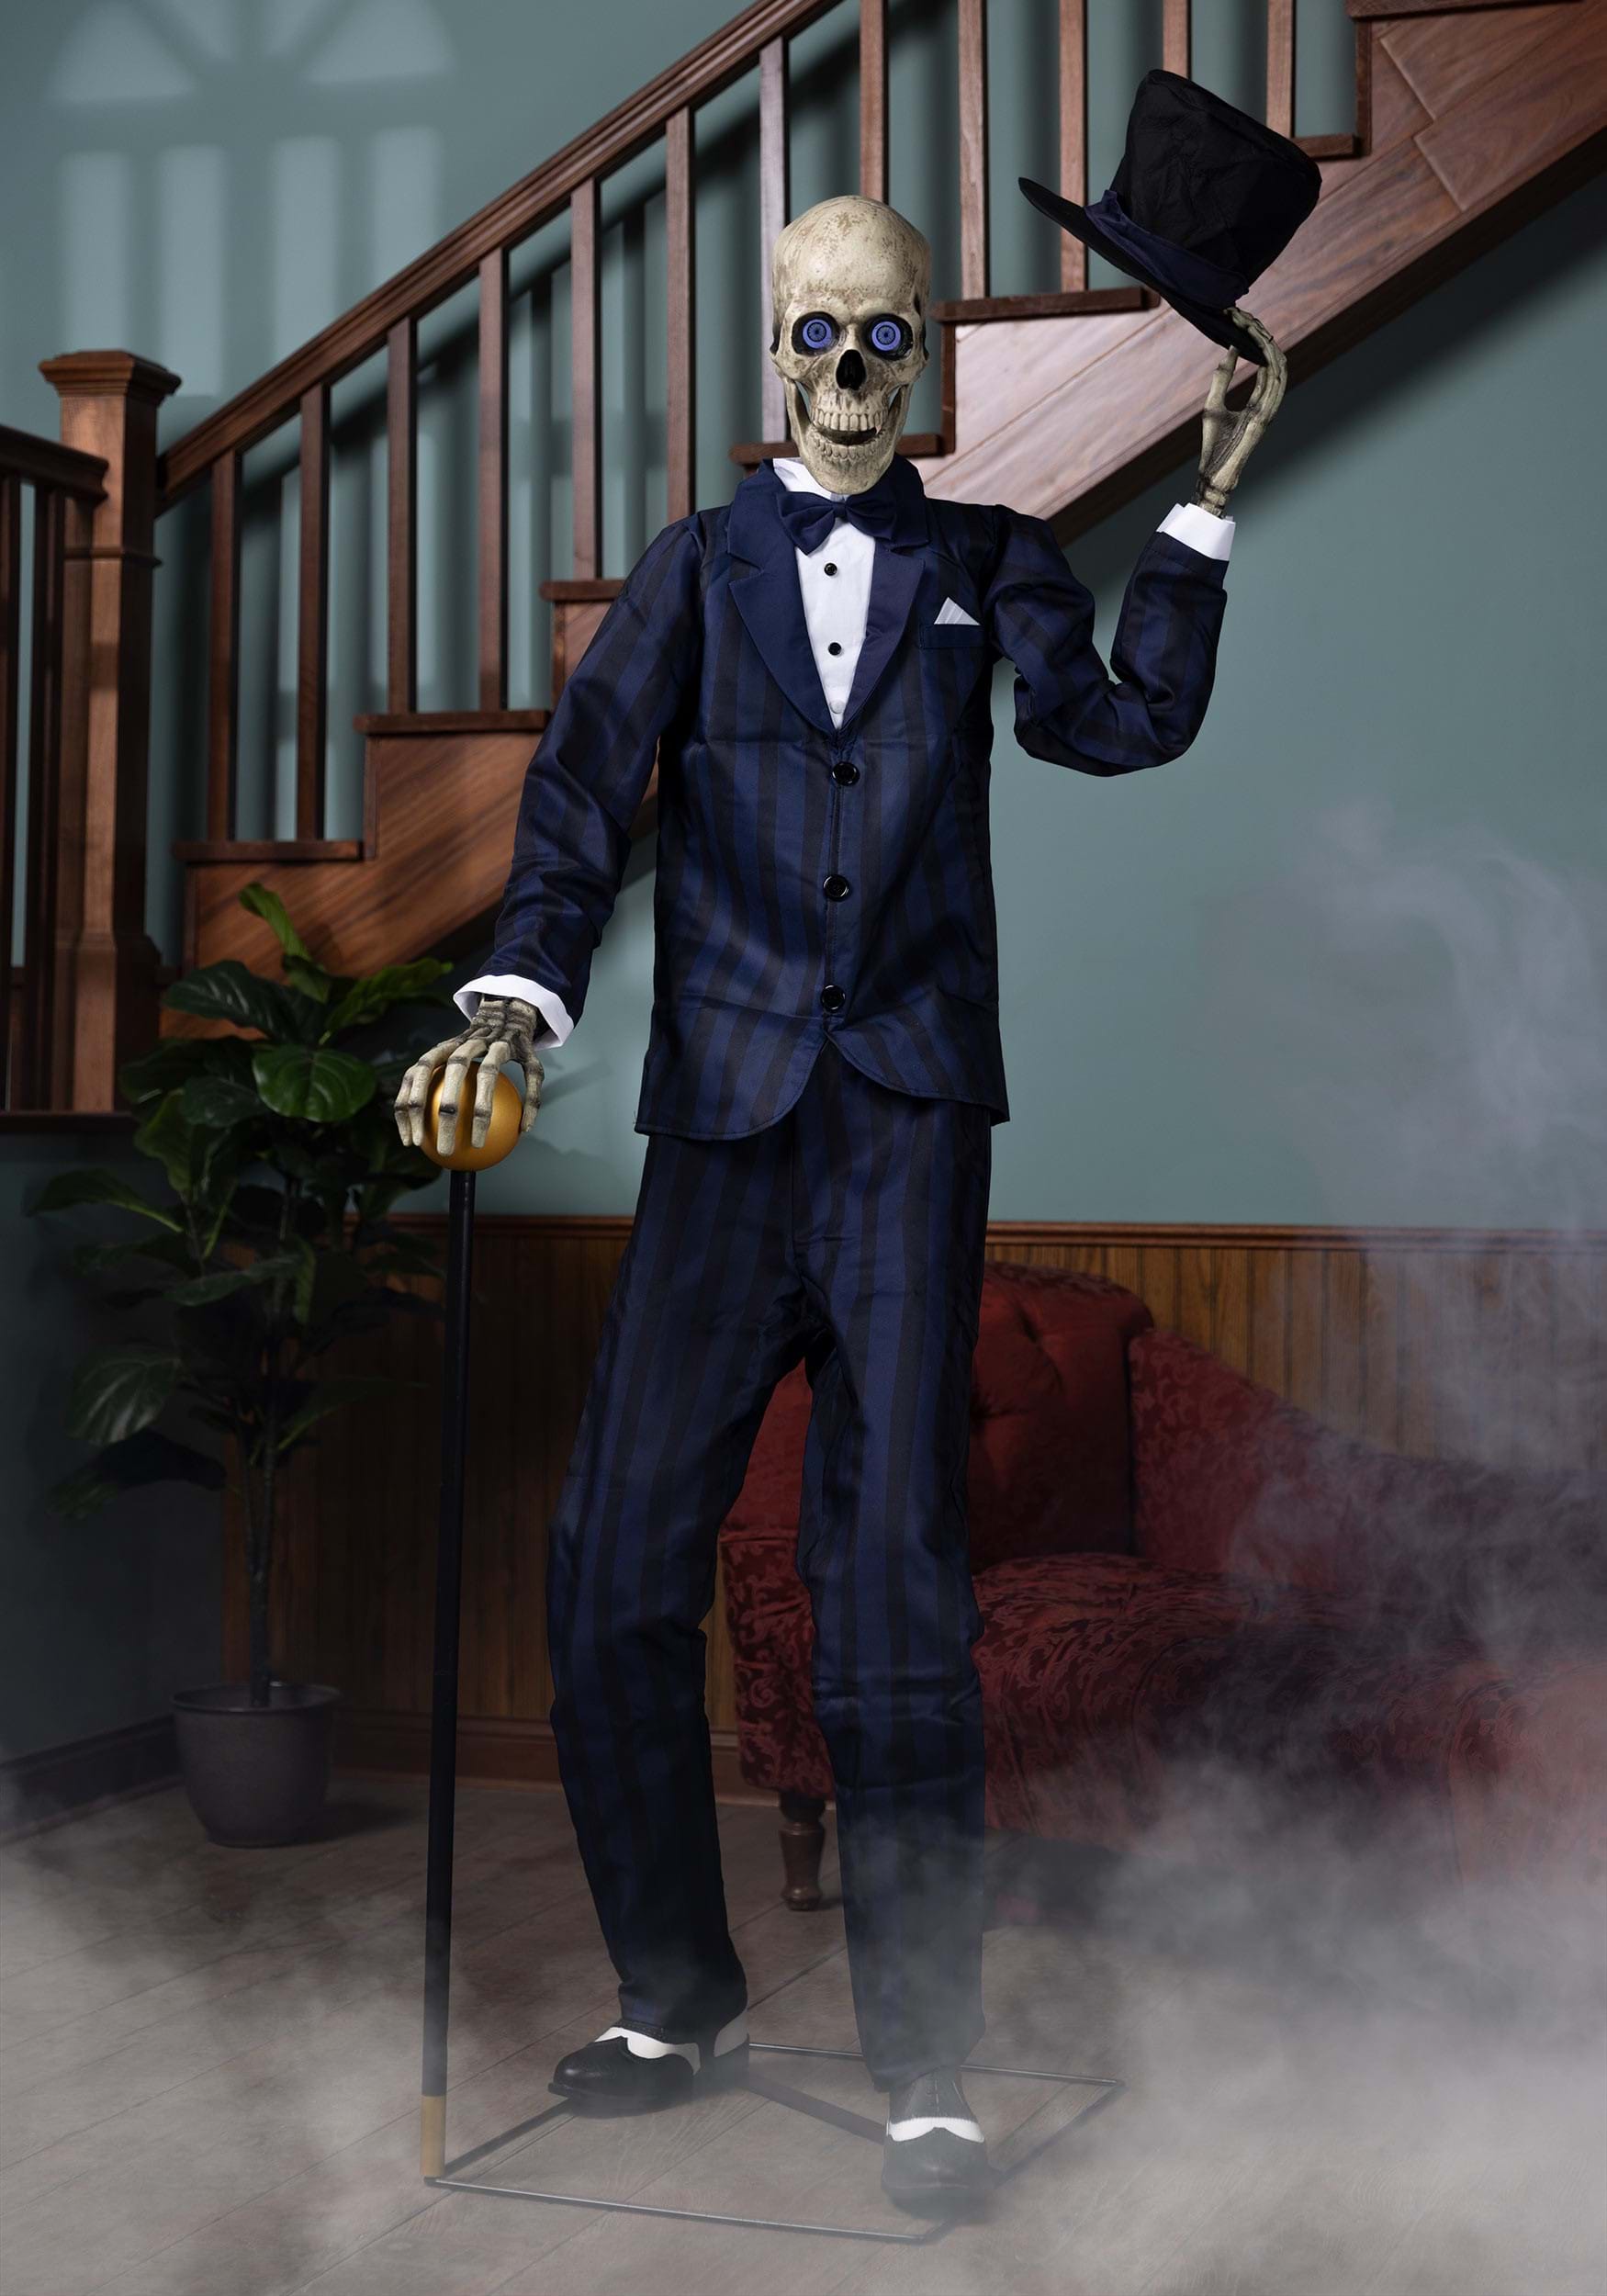 6FT Gentleman Skeleton Animatronic Halloween Prop , Skeleton Decorations